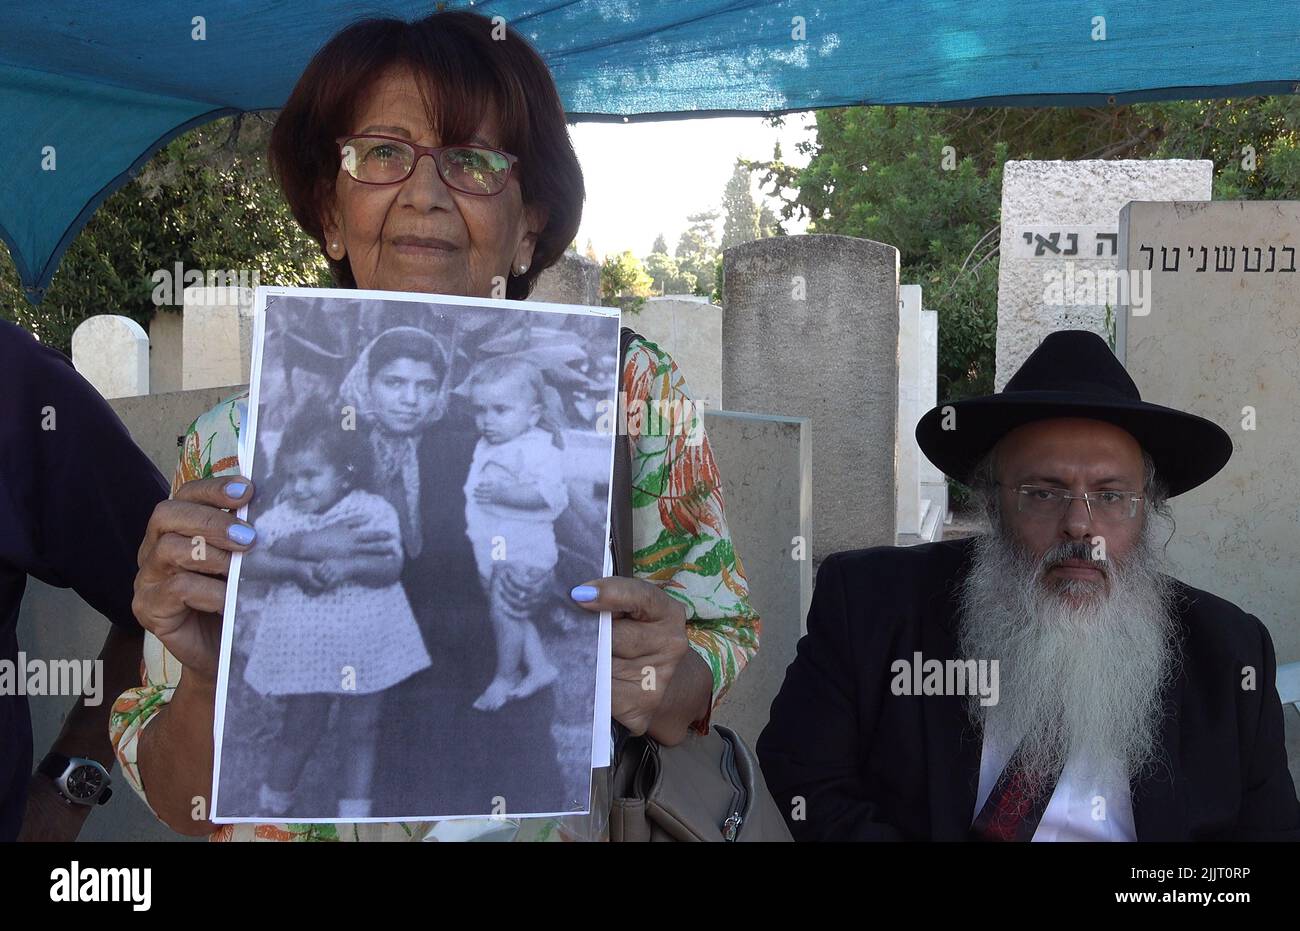 GIVATAYIM, ISRAEL - JULIO 27: Ruth Sharabi, hermana de Yosef Melamed, un niño yemenita que murió en 1949, Sostiene una fotografía de la infancia que muestra a Yossef y a ella con su madre mientras los antropólogos médicos israelíes exhuman la tumba del niño para recuperar una muestra de ADN en el Cementerio Nahalat Yitzhak el 27 de julio de 2022 en Givatayim, Israel. La tumba fue abierta para demostrar a la familia del niño que está enterrado allí y que no fue secuestrado y puesto para adopción. En la década de 1950s en Israel, los niños yemenitas desaparecieron, y los padres afirman que fueron 'secuestrados'. Crédito: Eddie Gerald/Alamy Live News Foto de stock